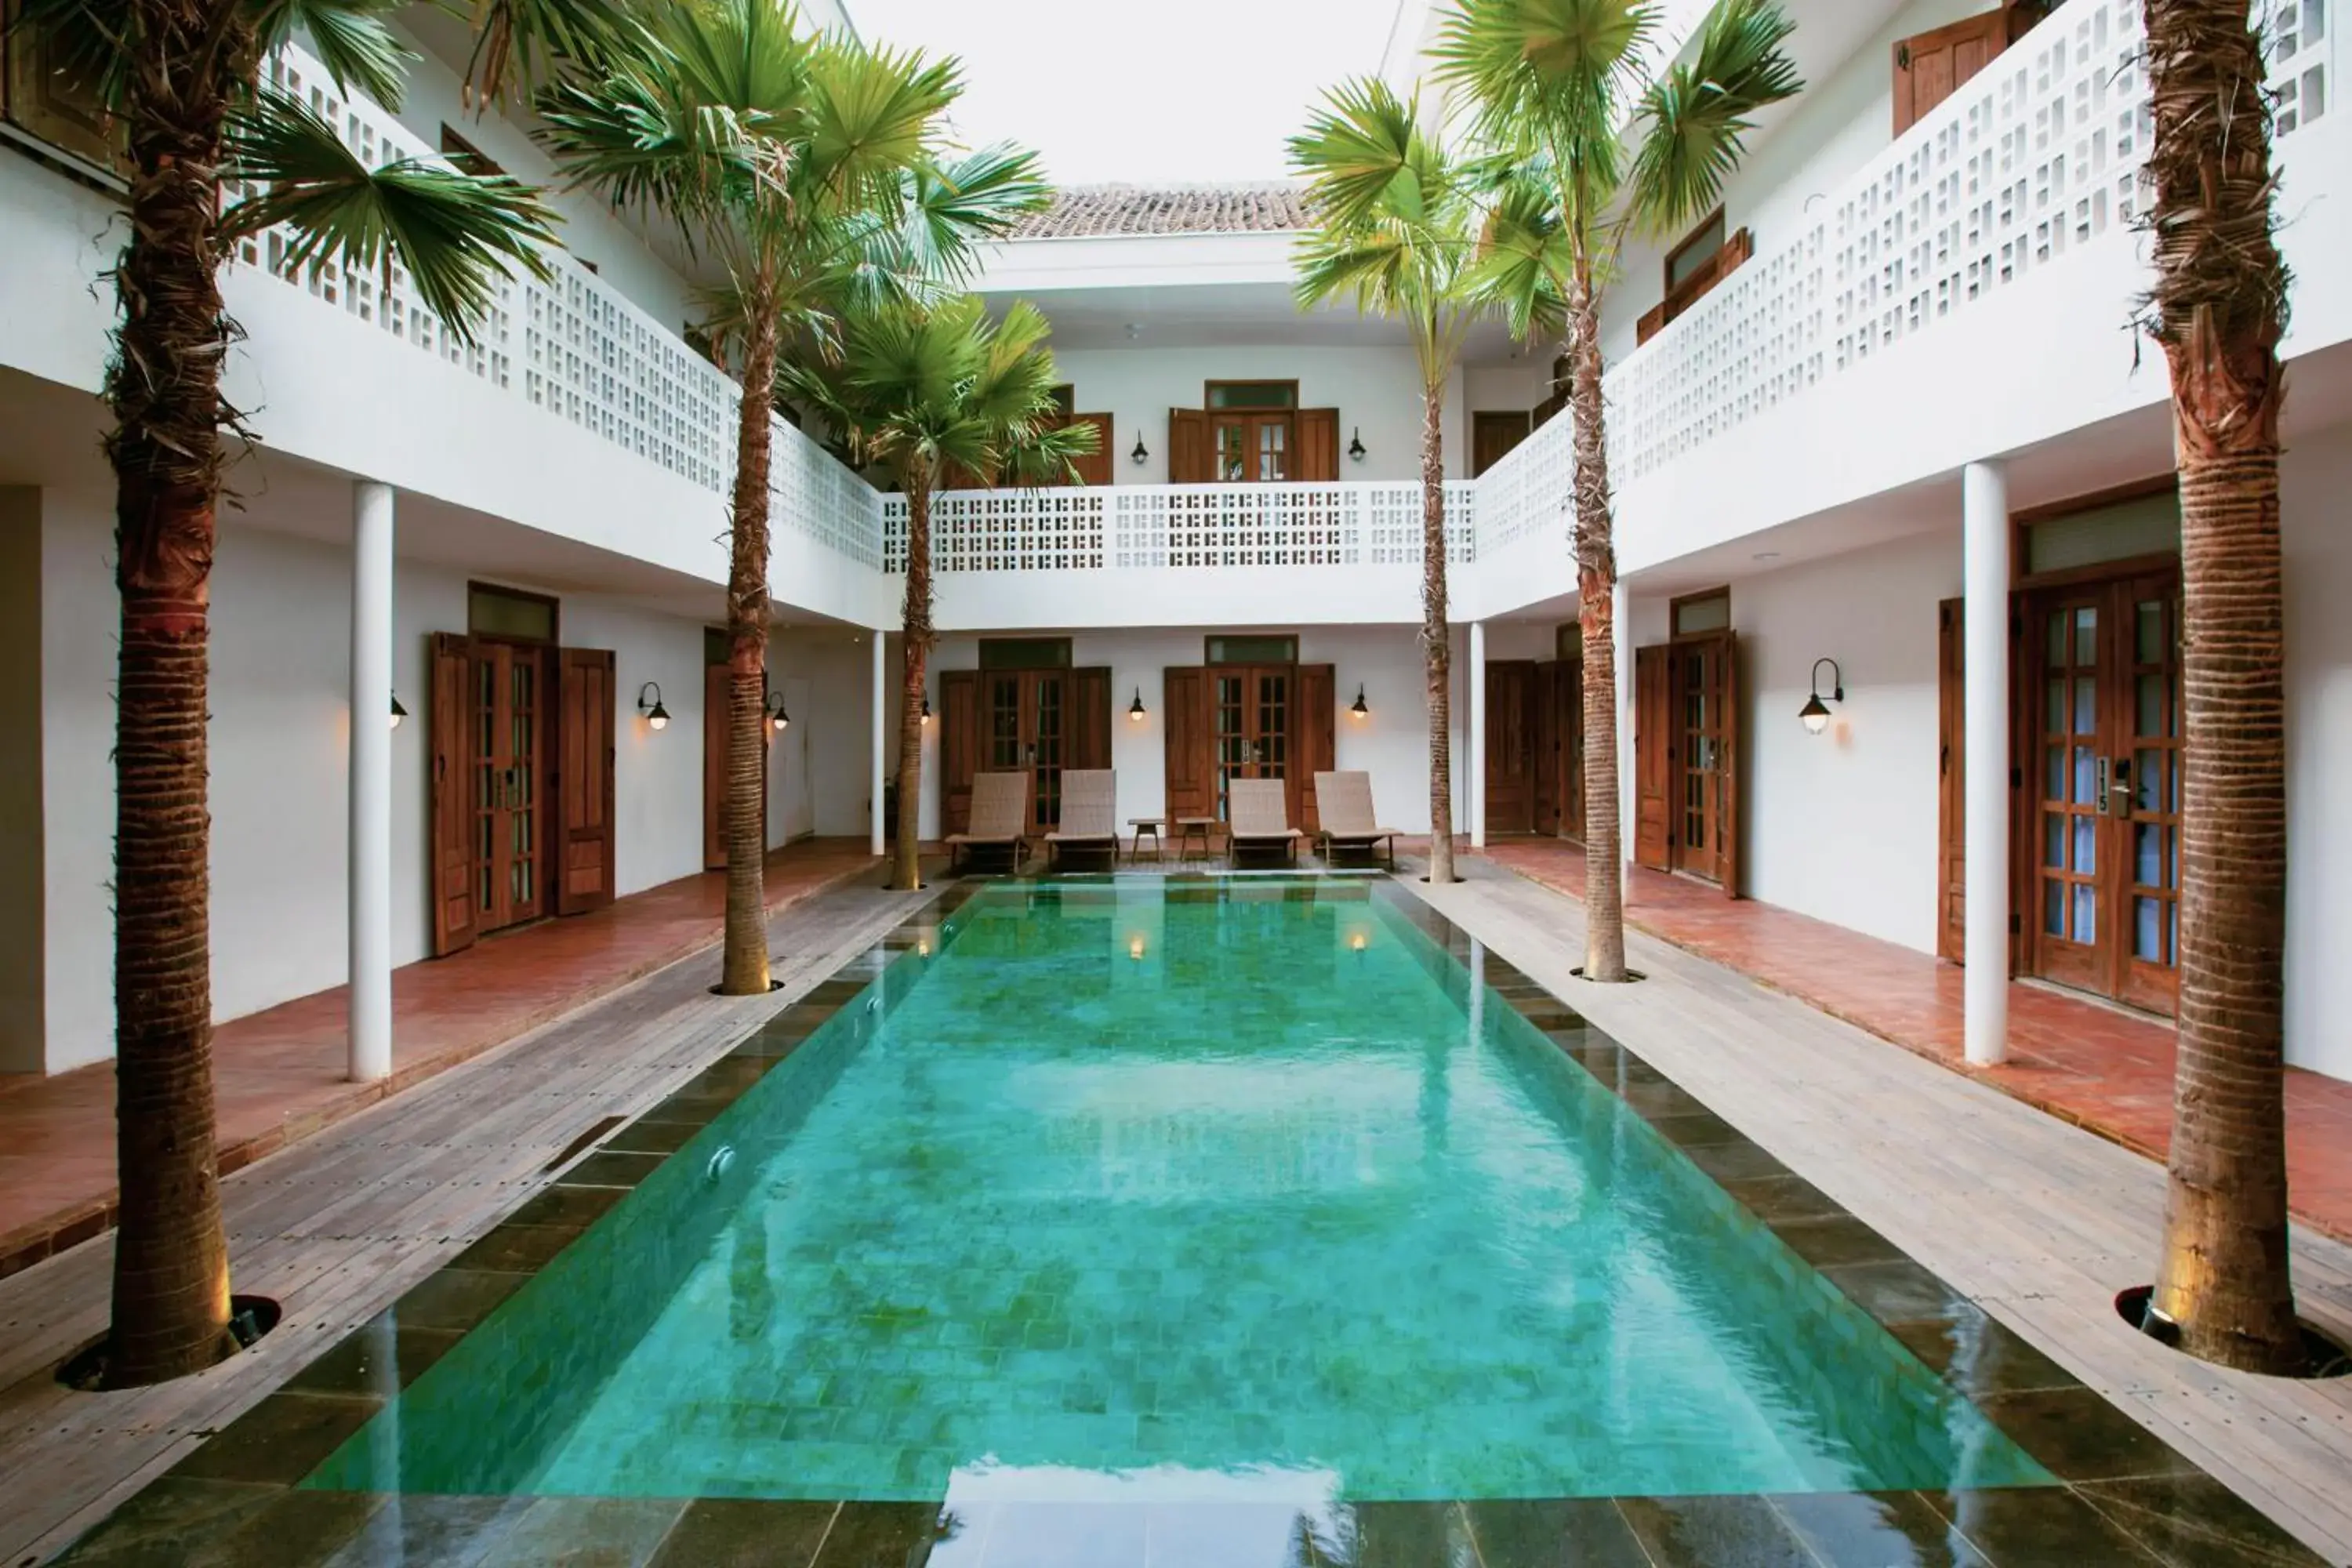 Swimming Pool in Adhisthana Hotel Yogyakarta